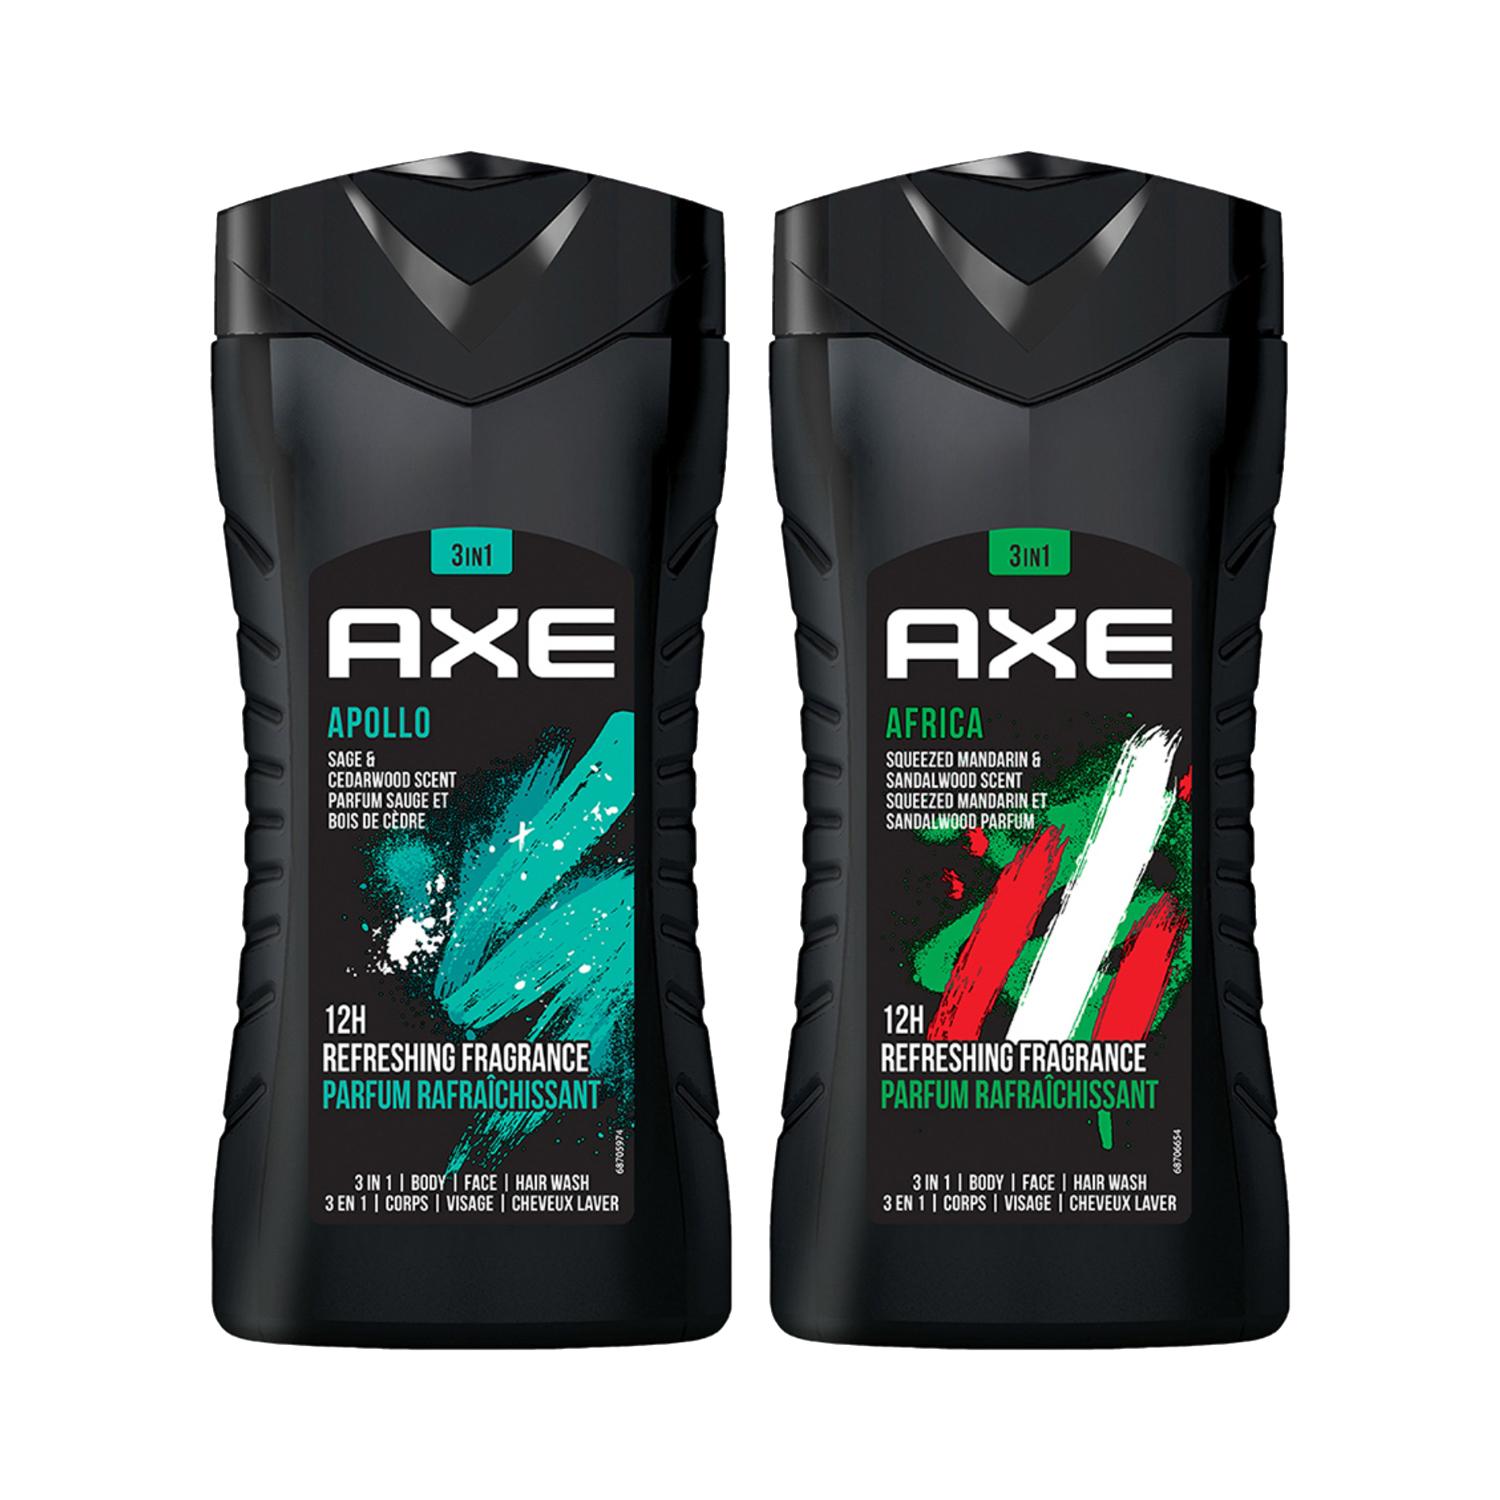 AXE | AXE Africa (250ml) & Apollo (250ml) 3 In 1 Body Face & Hair Wash For Men Long Lasting Combo